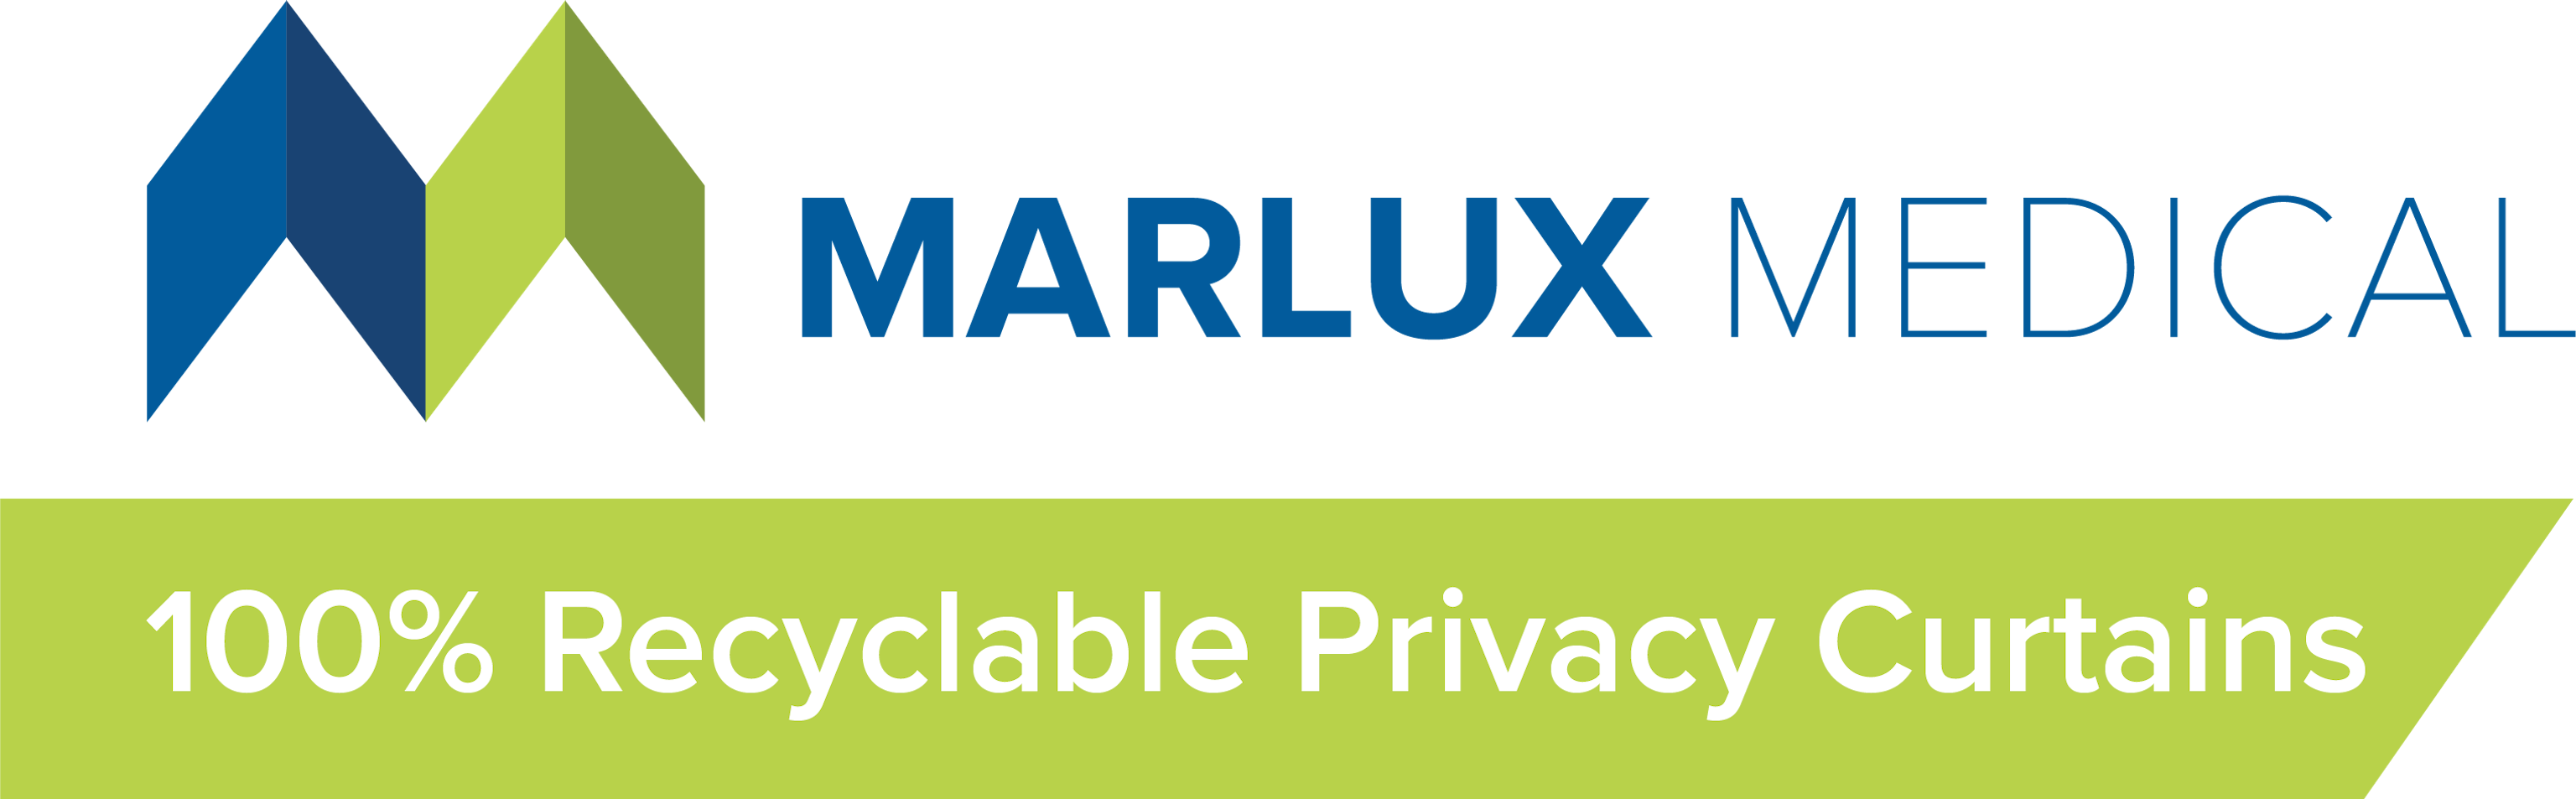 Marlux Medical